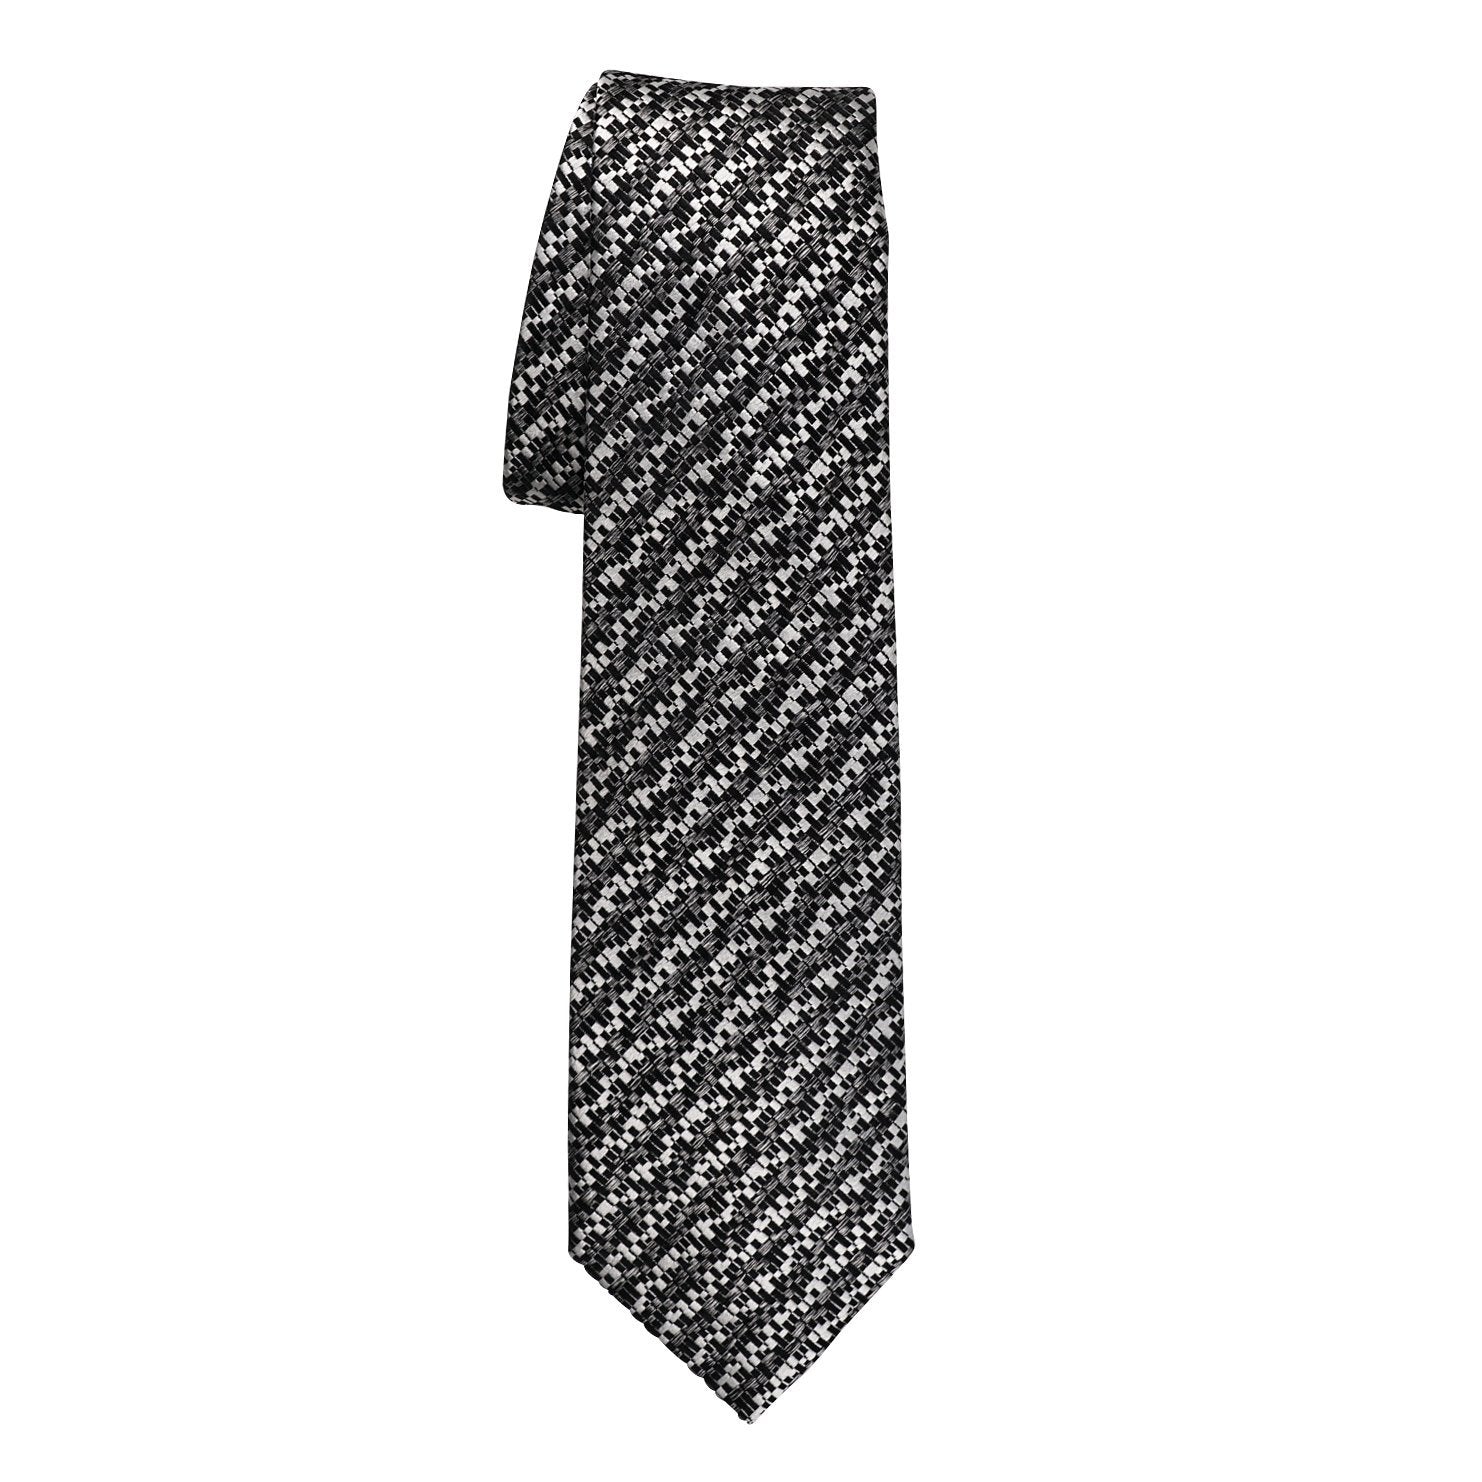 Charcoal Canestro Luxury Necktie